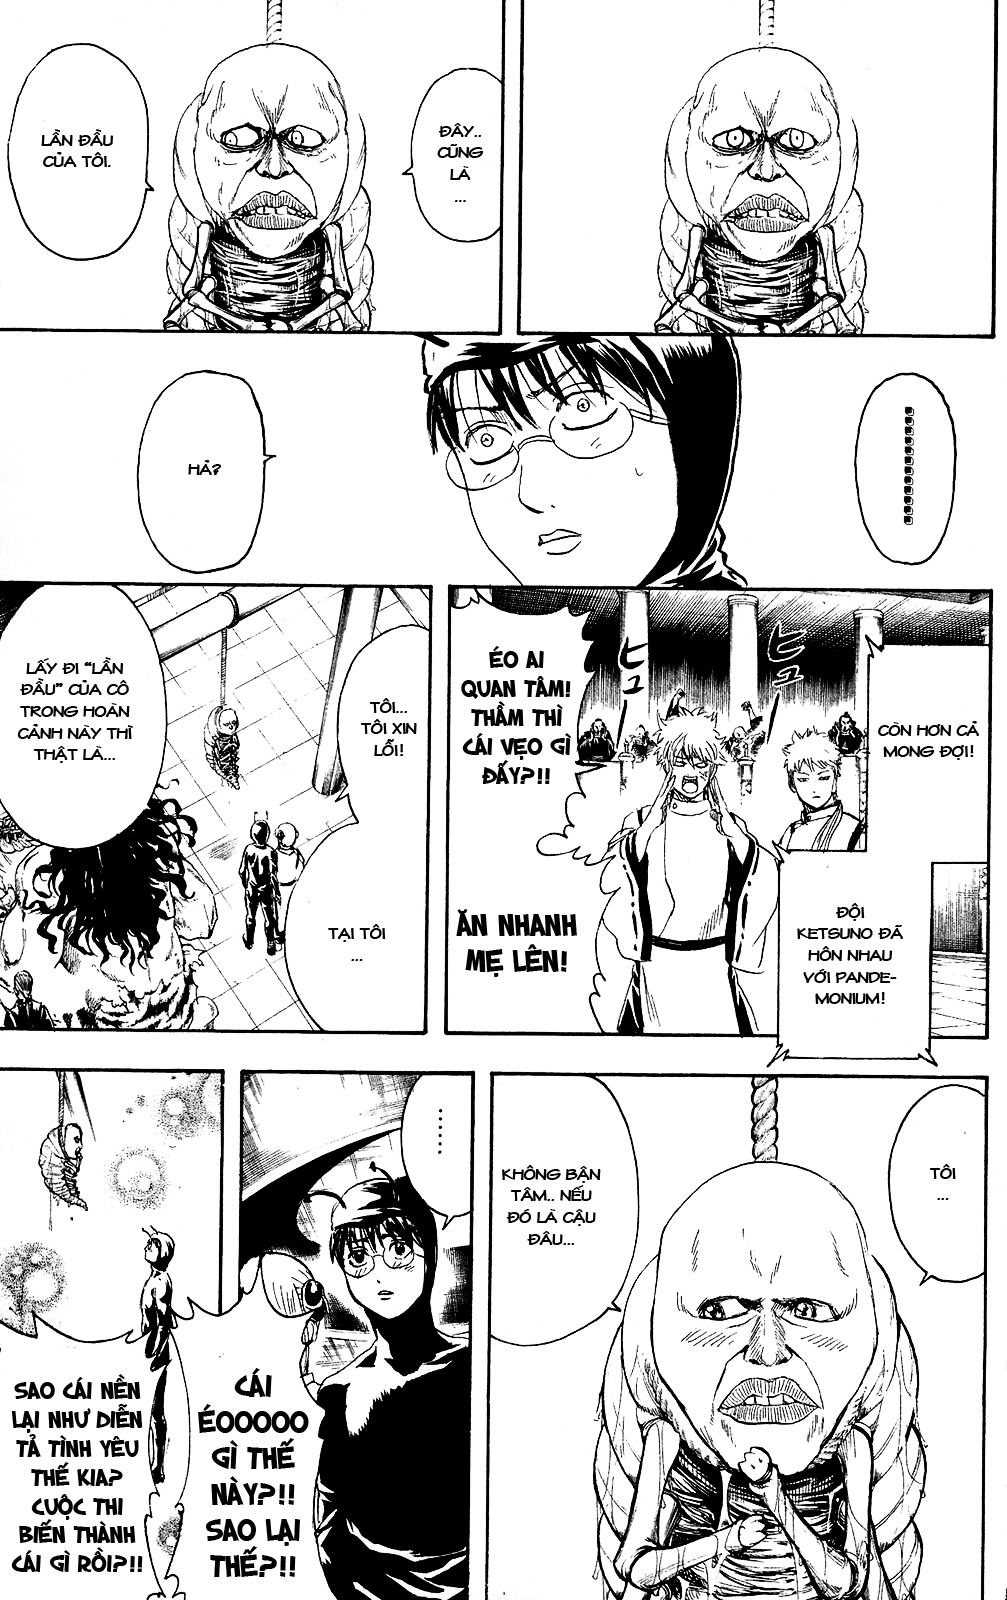 Gintama chapter 285 trang 10